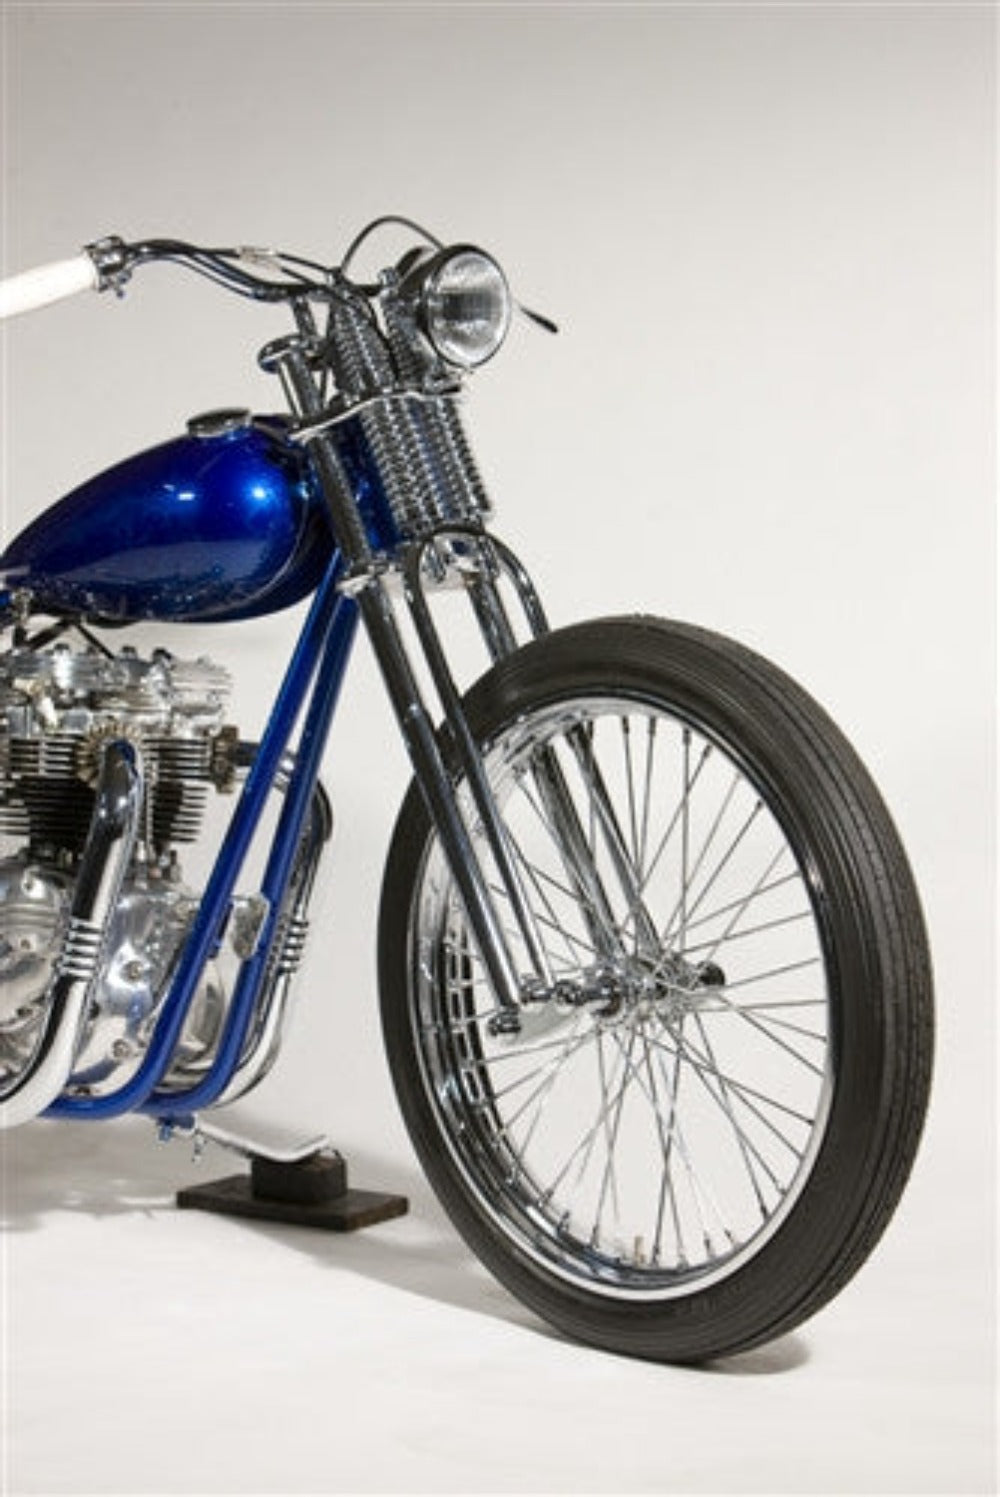 Factory metal works hand built custom bobber motorcycle true vintage 